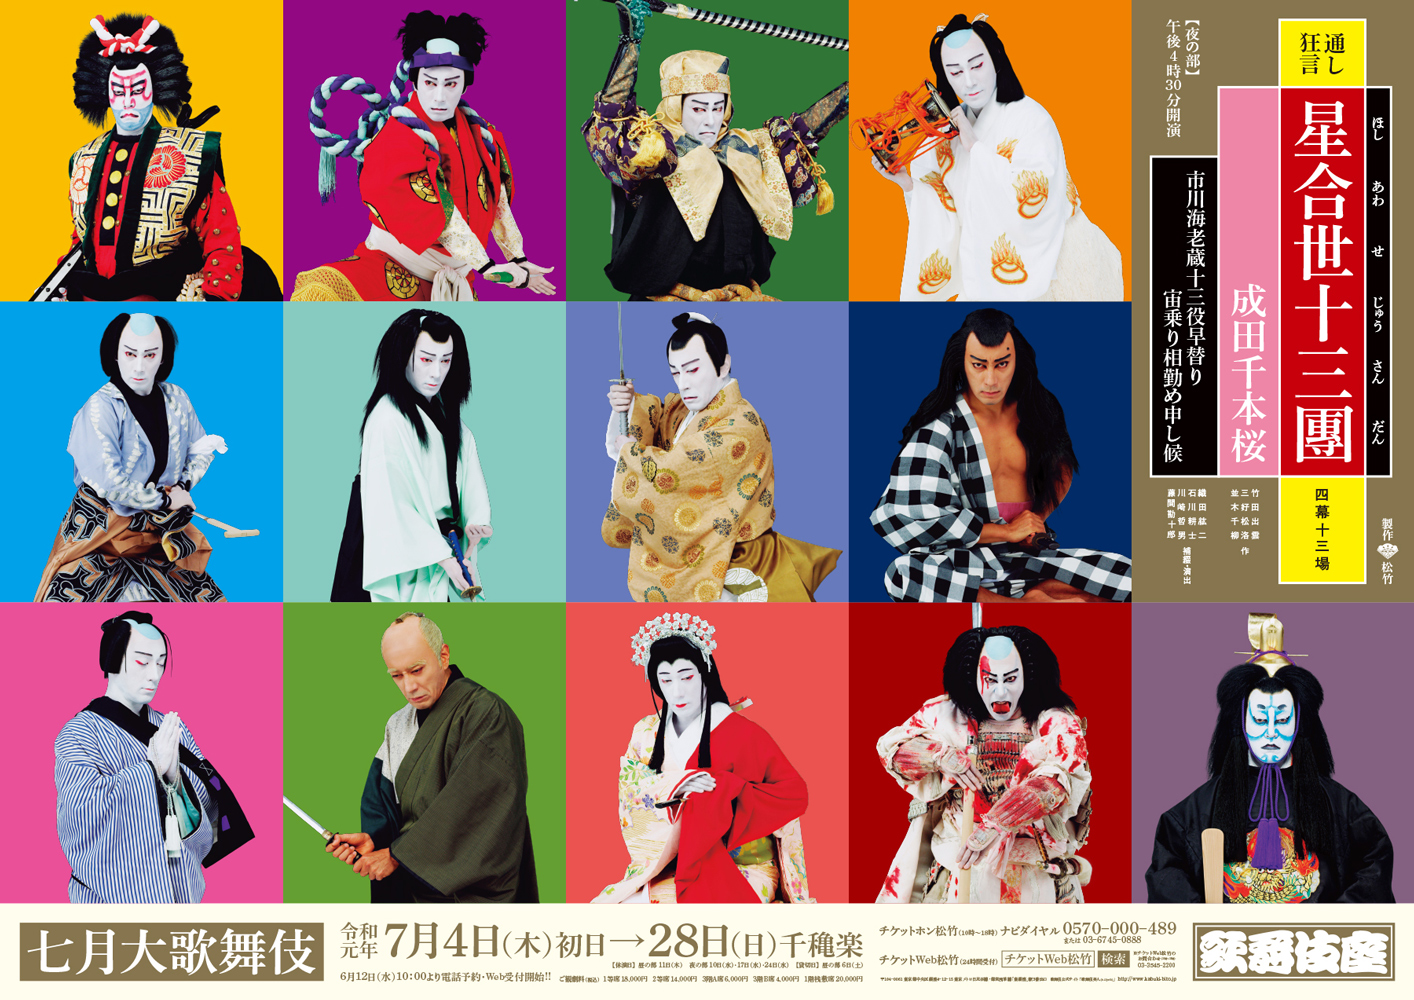 歌舞伎座『星合世十三團』特別ポスター公開